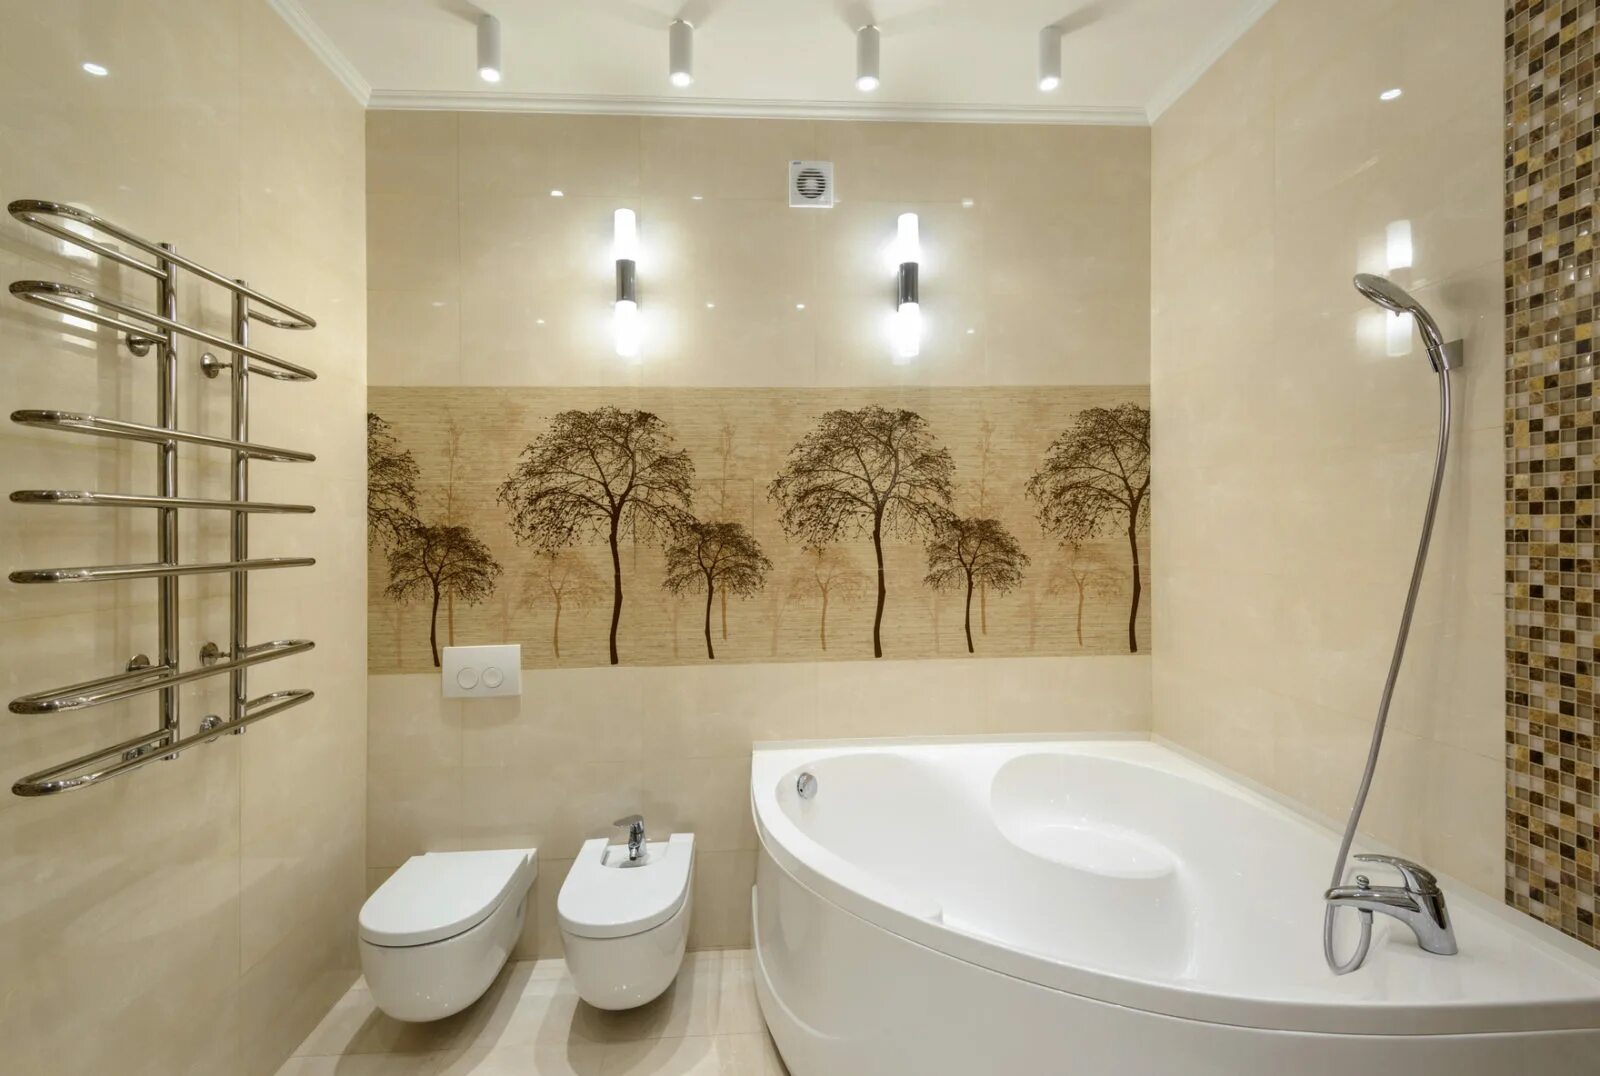 S vanna. Идеи для ванной комнаты. Интерьер ванной комнаты. Дизайн санузла. Угловая ванна в интерьере.